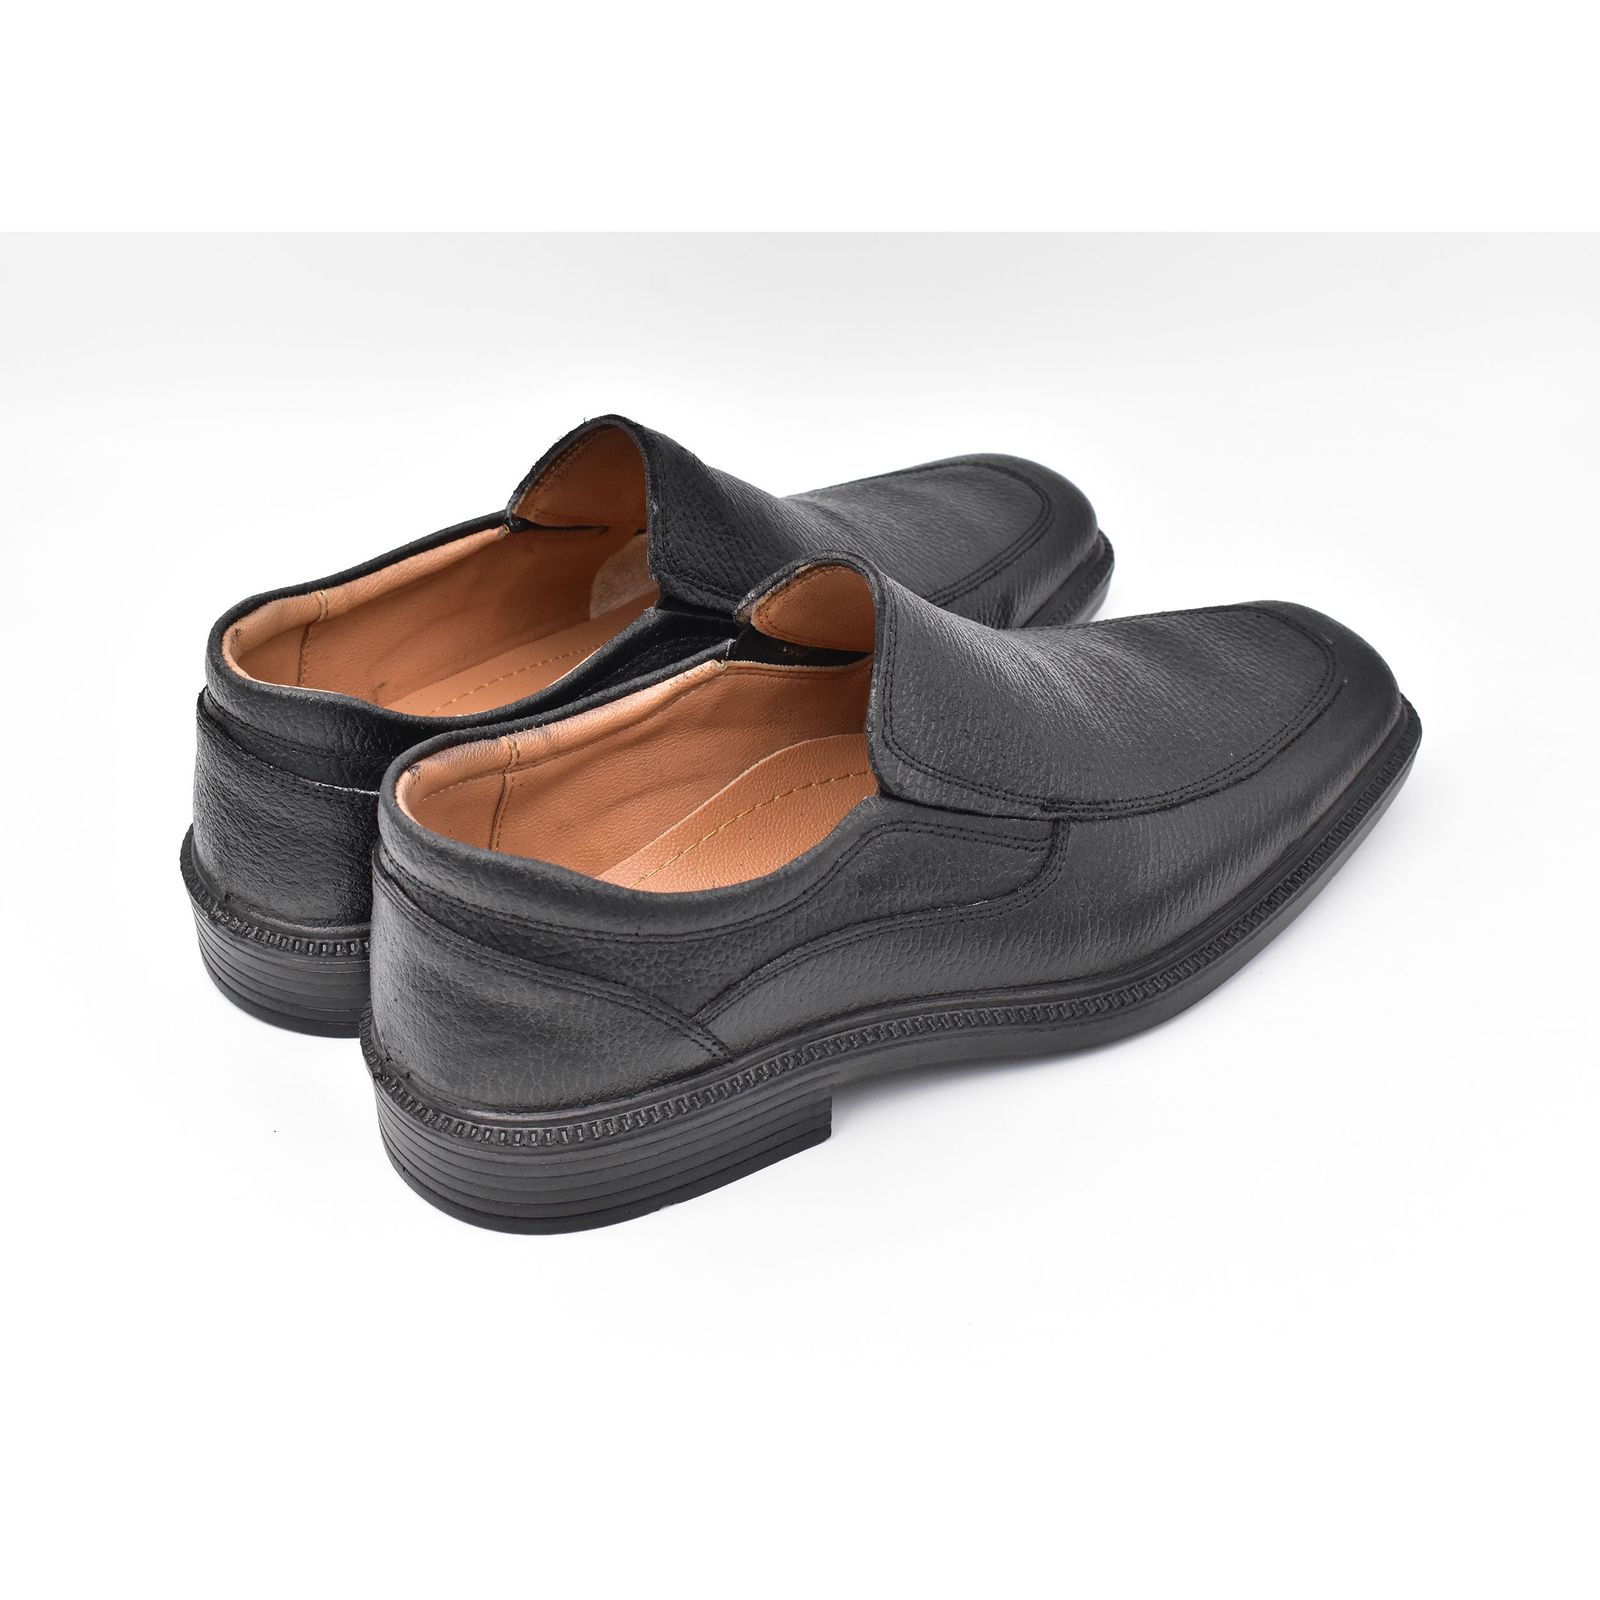 کفش مردانه پاما مدل Skit کد G1359 -  - 7